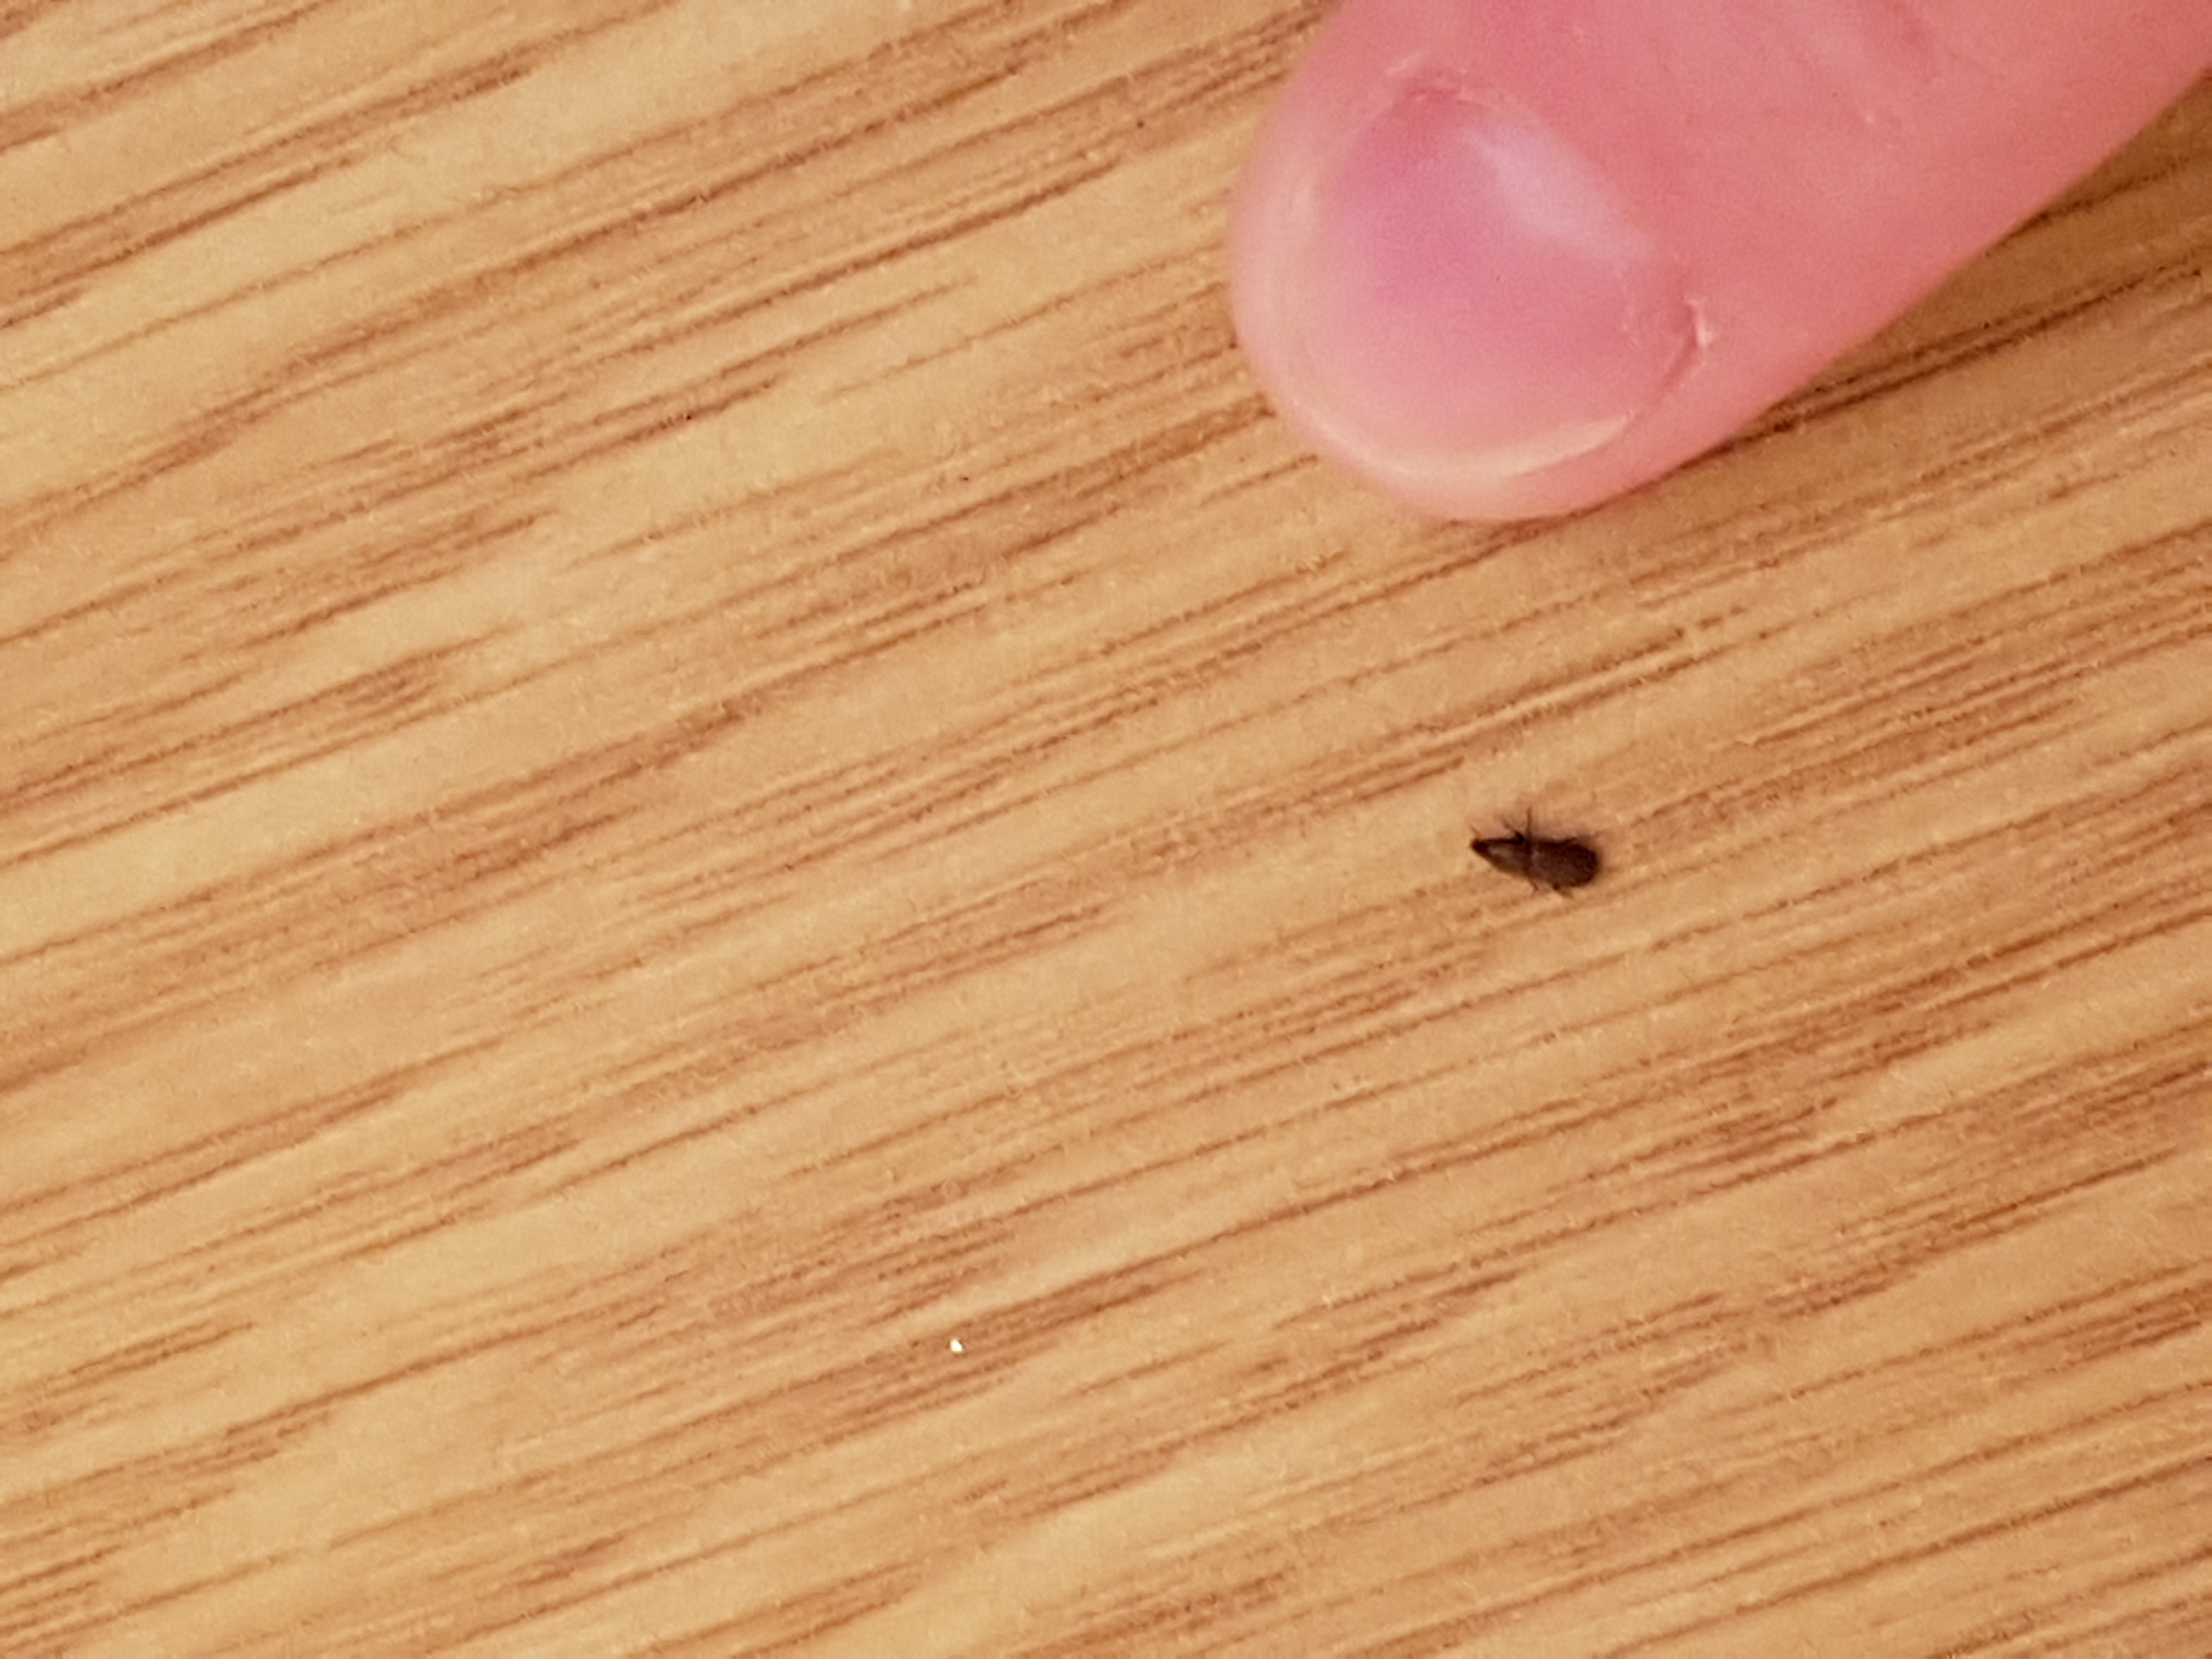 Petite Insecte Noir A Carapace A Identifier